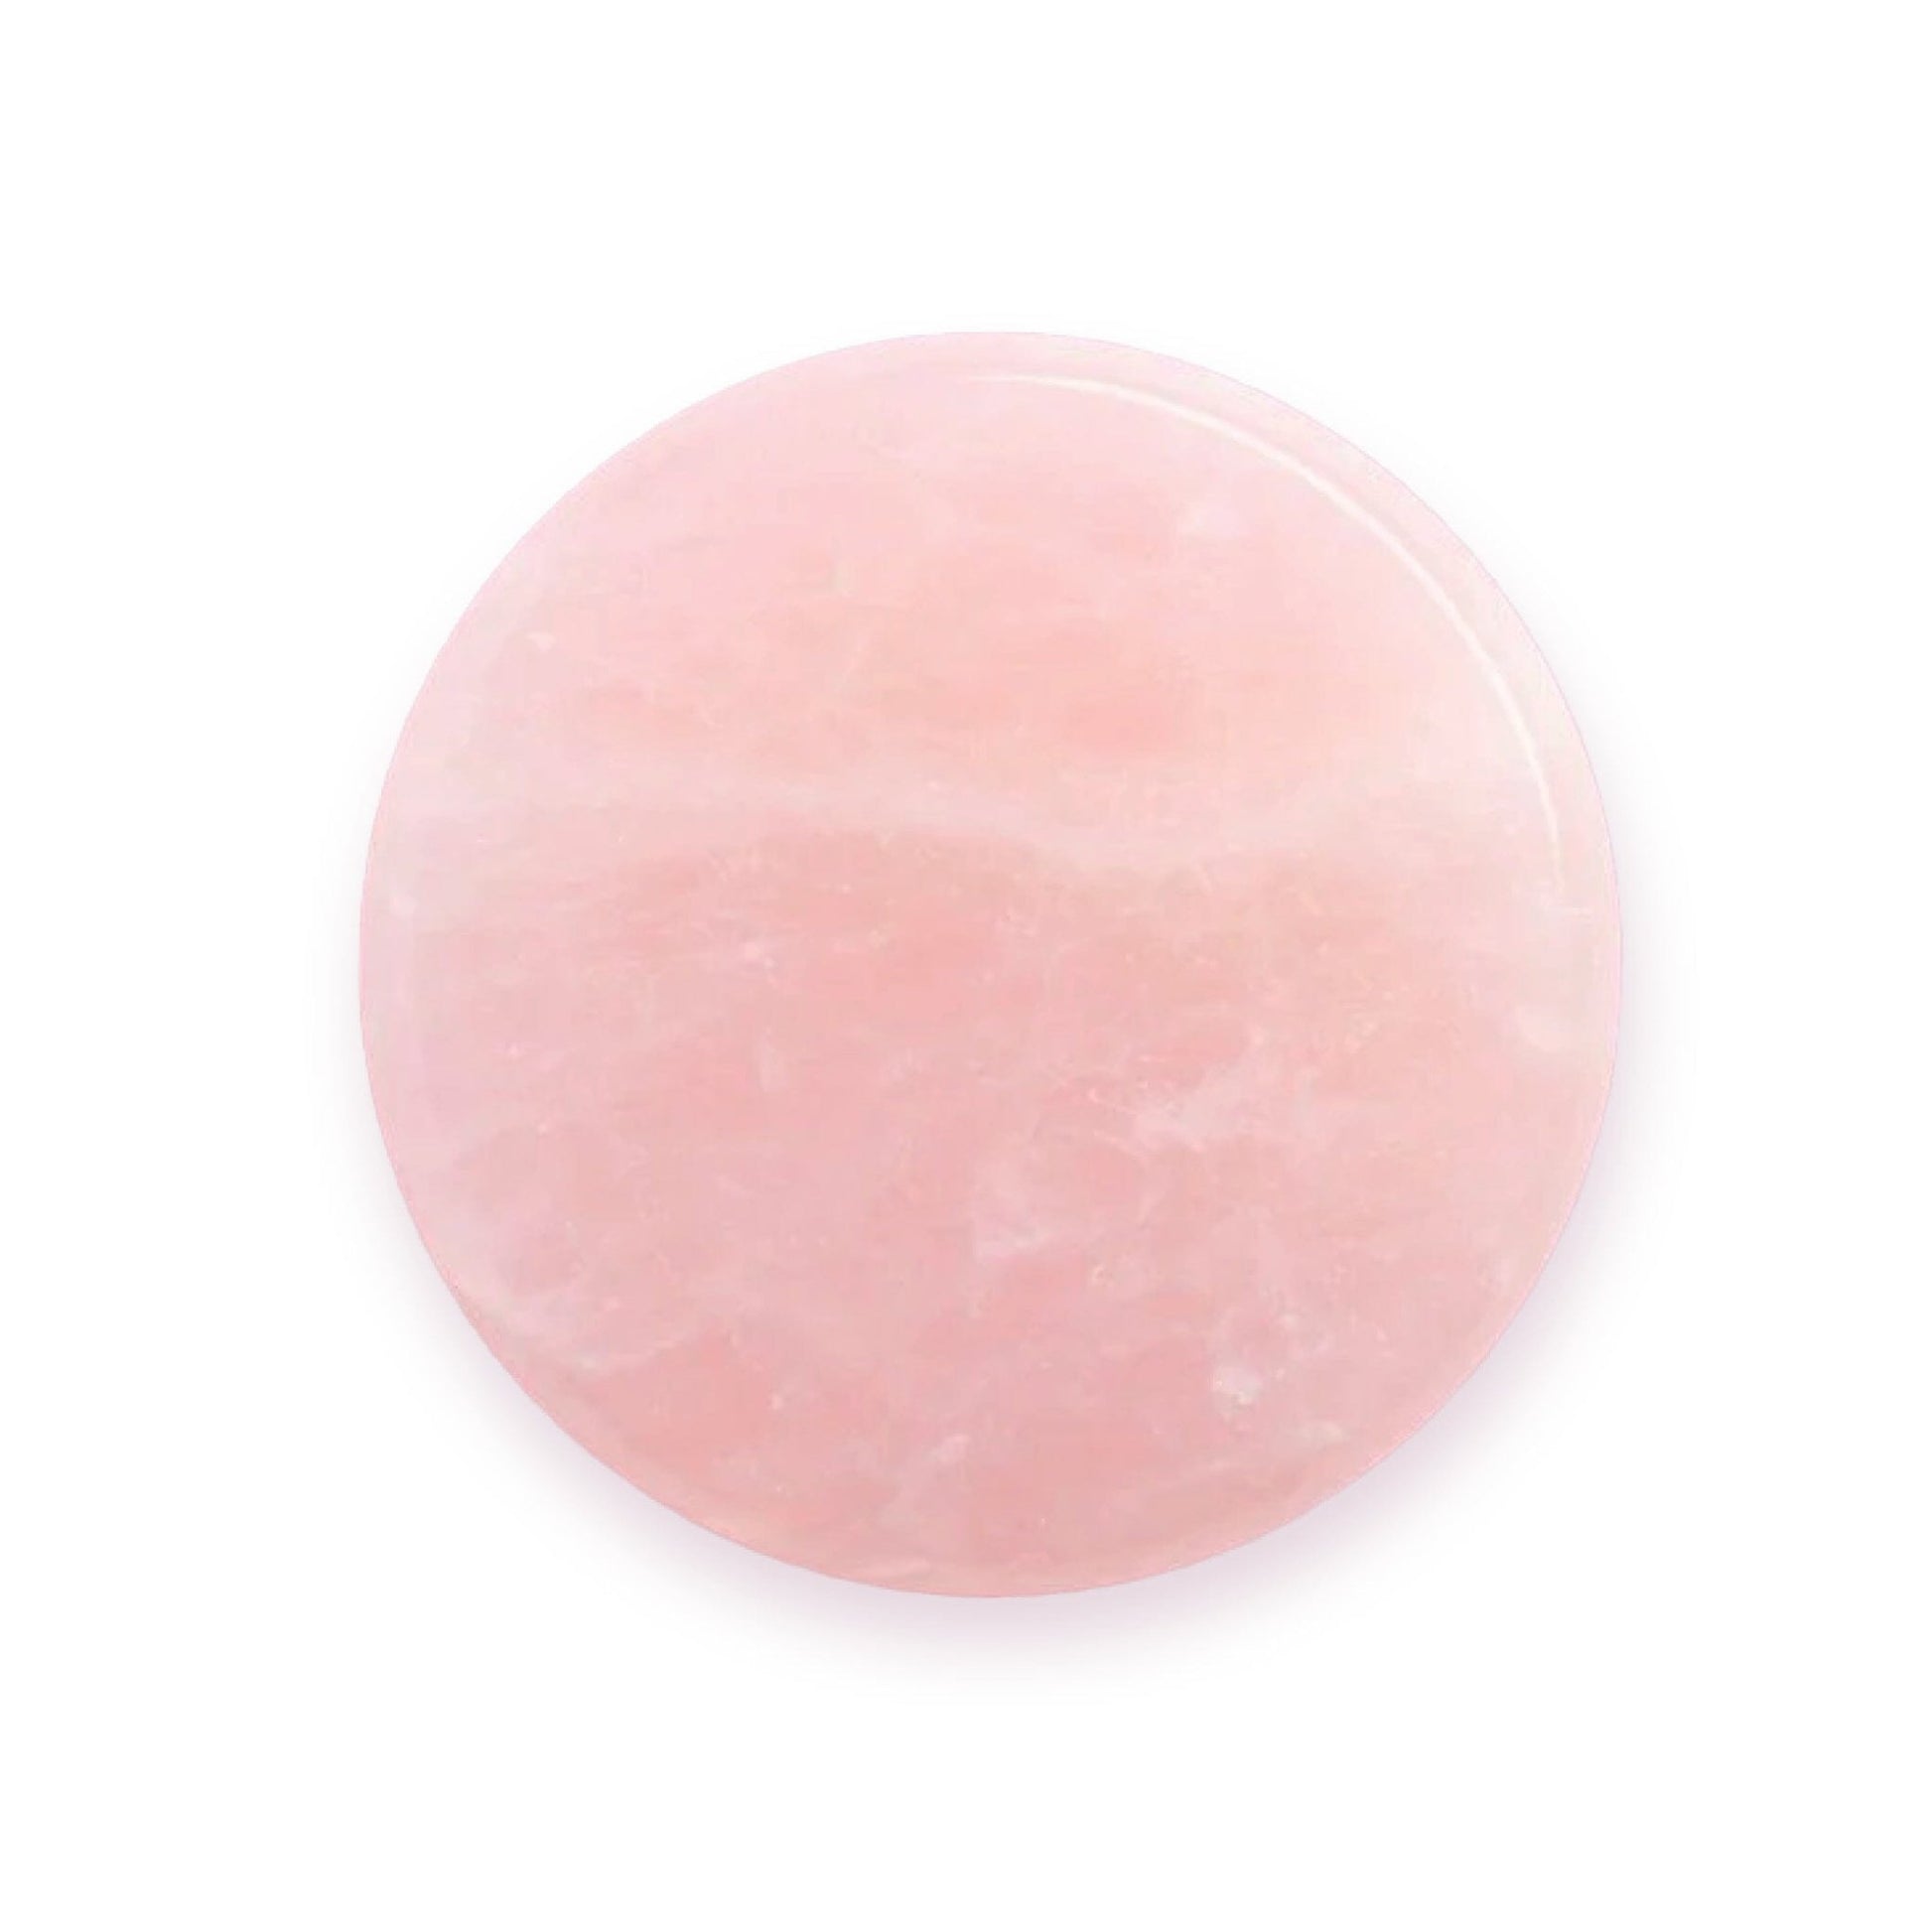 Pink Jade Stone for Lash Glue | Eyelash Salon Supplies - LASH V